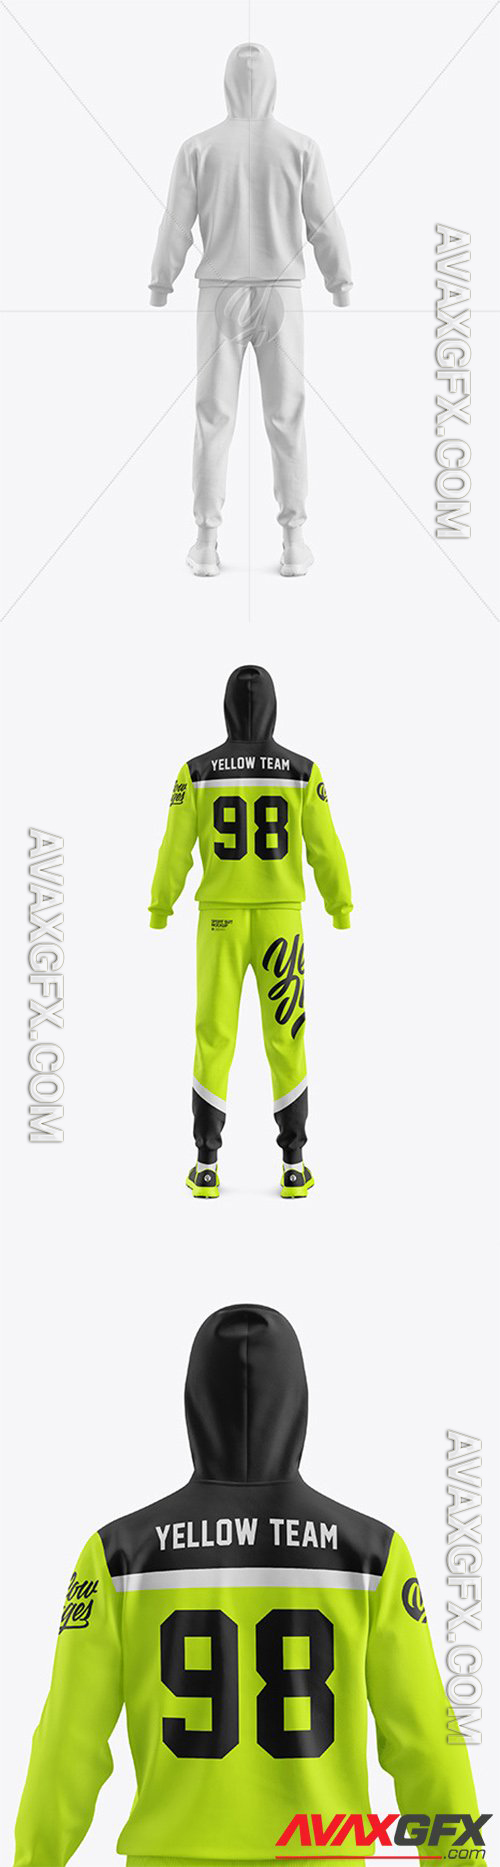 Men's Sport Suit Mockup - Back View 56604